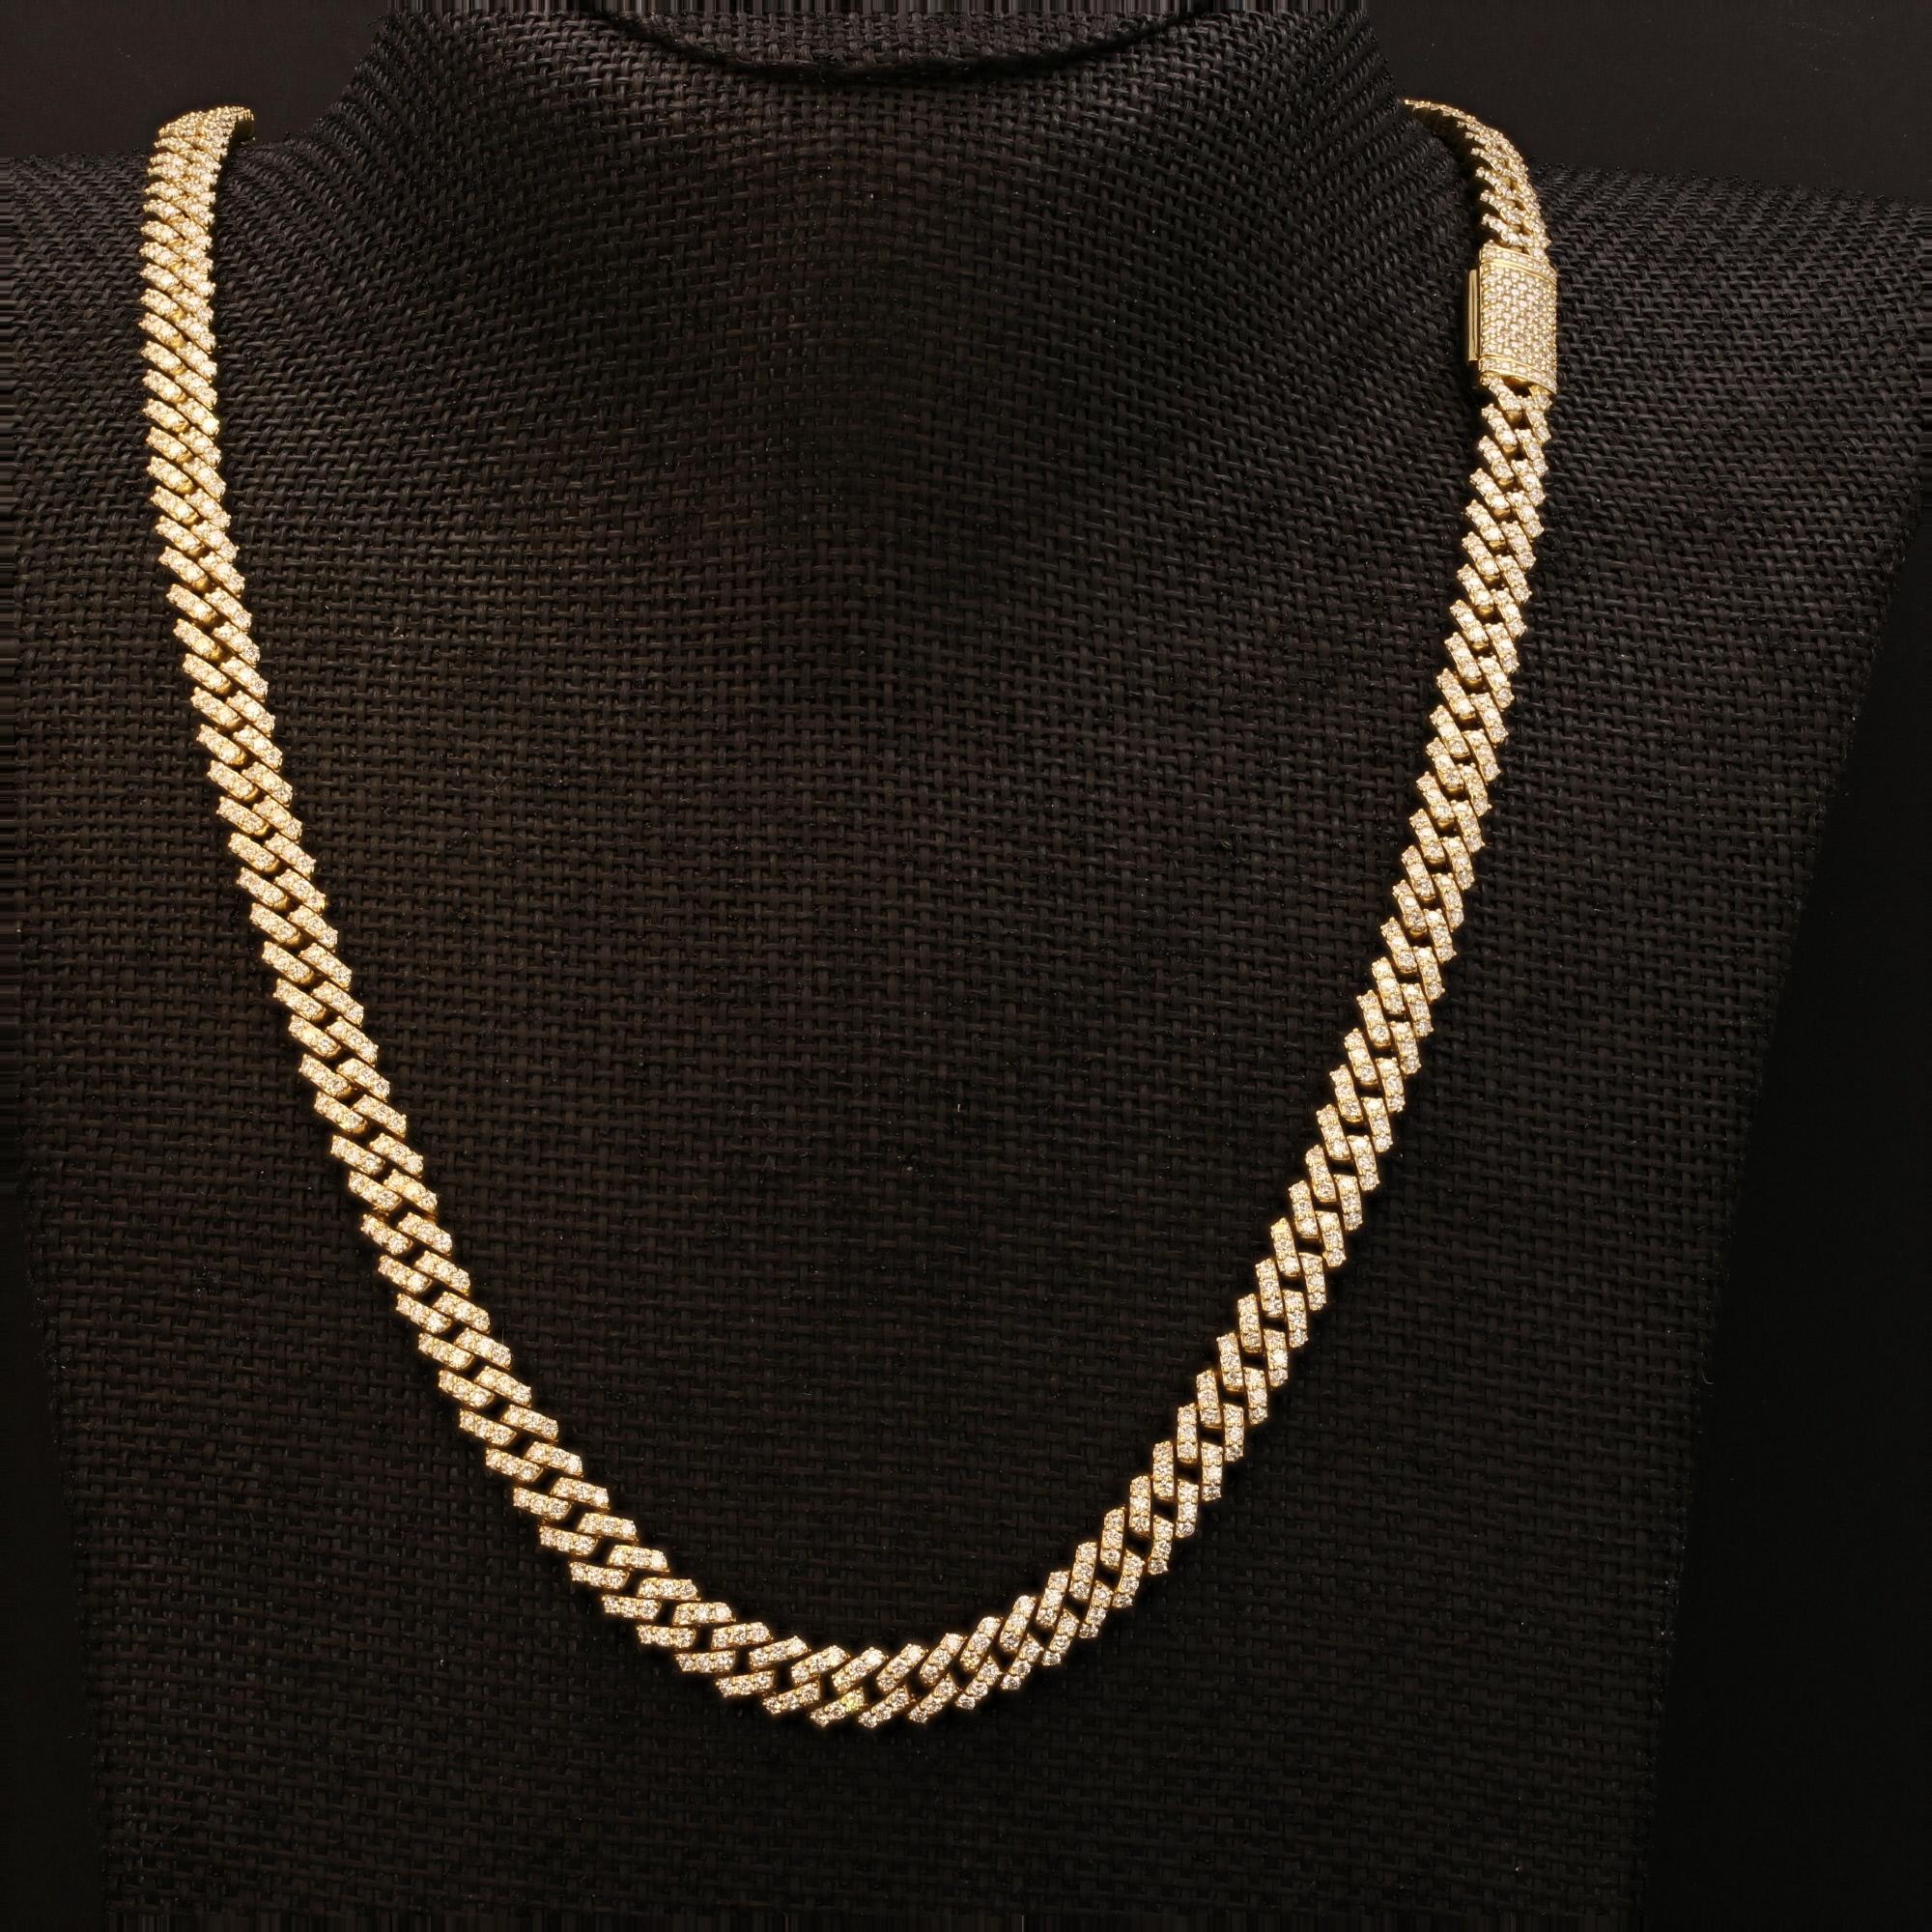 Erhöhen Sie Ihren Stil mit der luxuriösen Raffinesse dieser kubanischen Diamant-Halskette Miami von Alex & Co. Handgefertigt aus massivem 10-karätigem Gelbgold mit Präzision und unvergleichlicher Liebe zum Detail. Jedes Glied ist in 2 Reihen mit